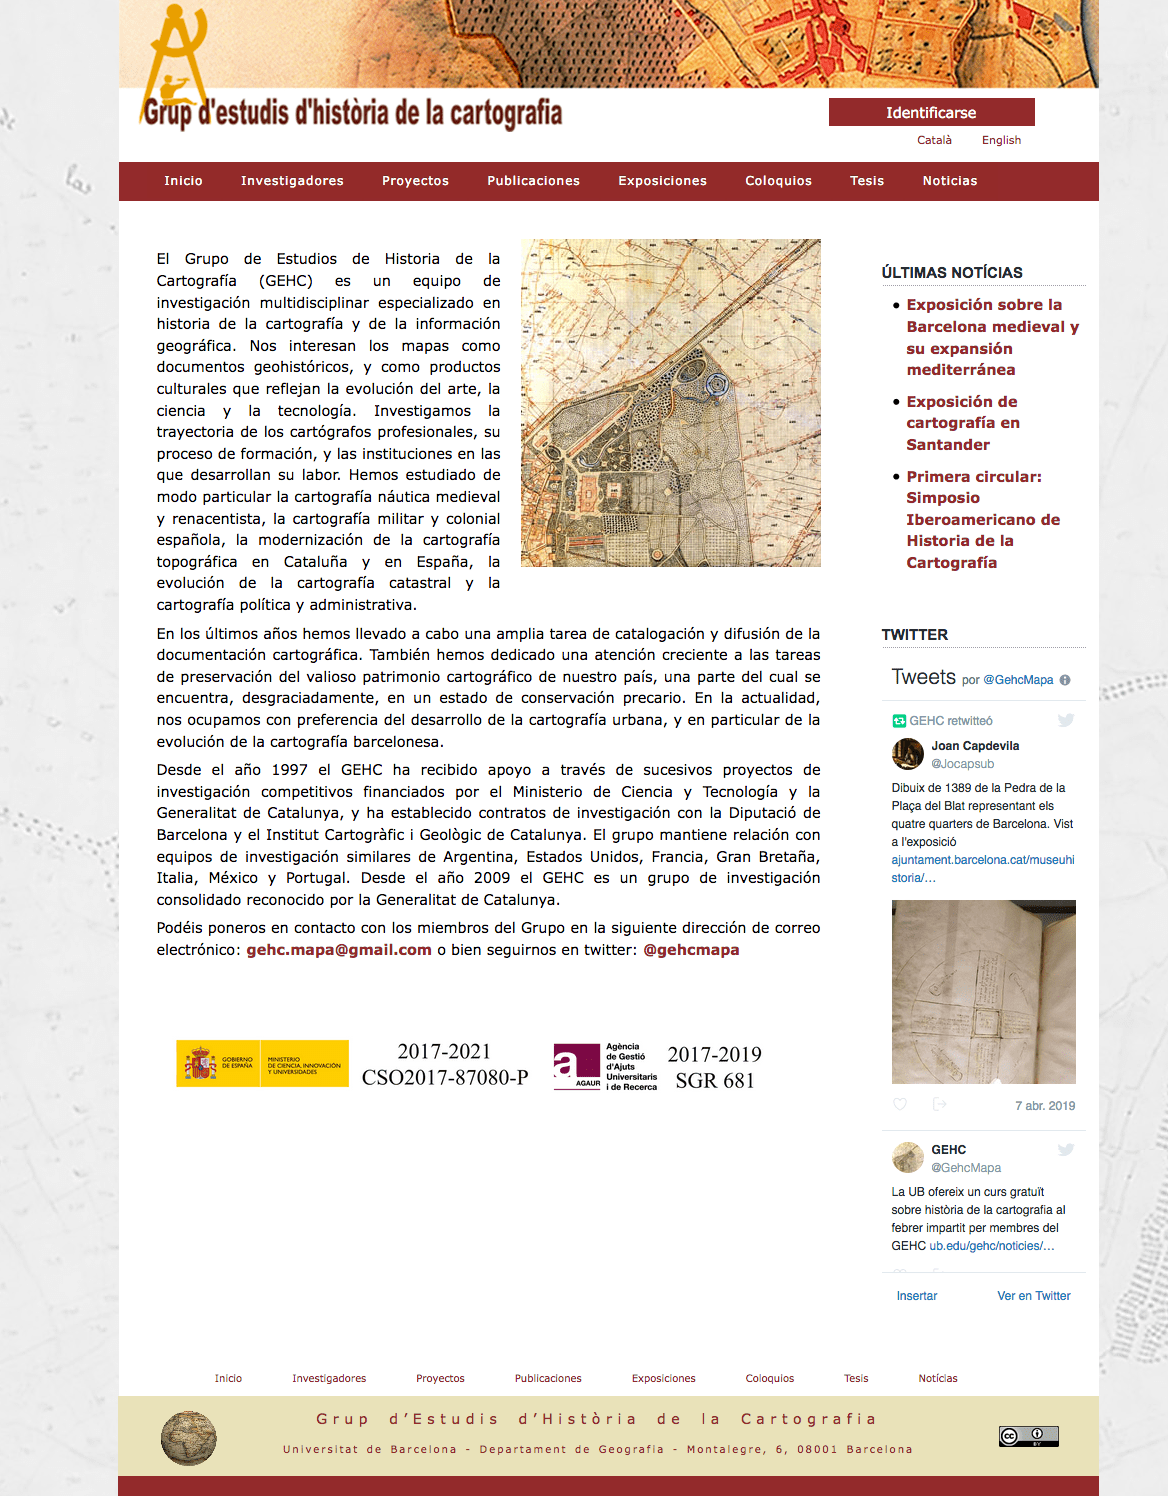 [Joan Alonso Design] Diseño Web | Grupo de Estudios de Historia de la Cartografía